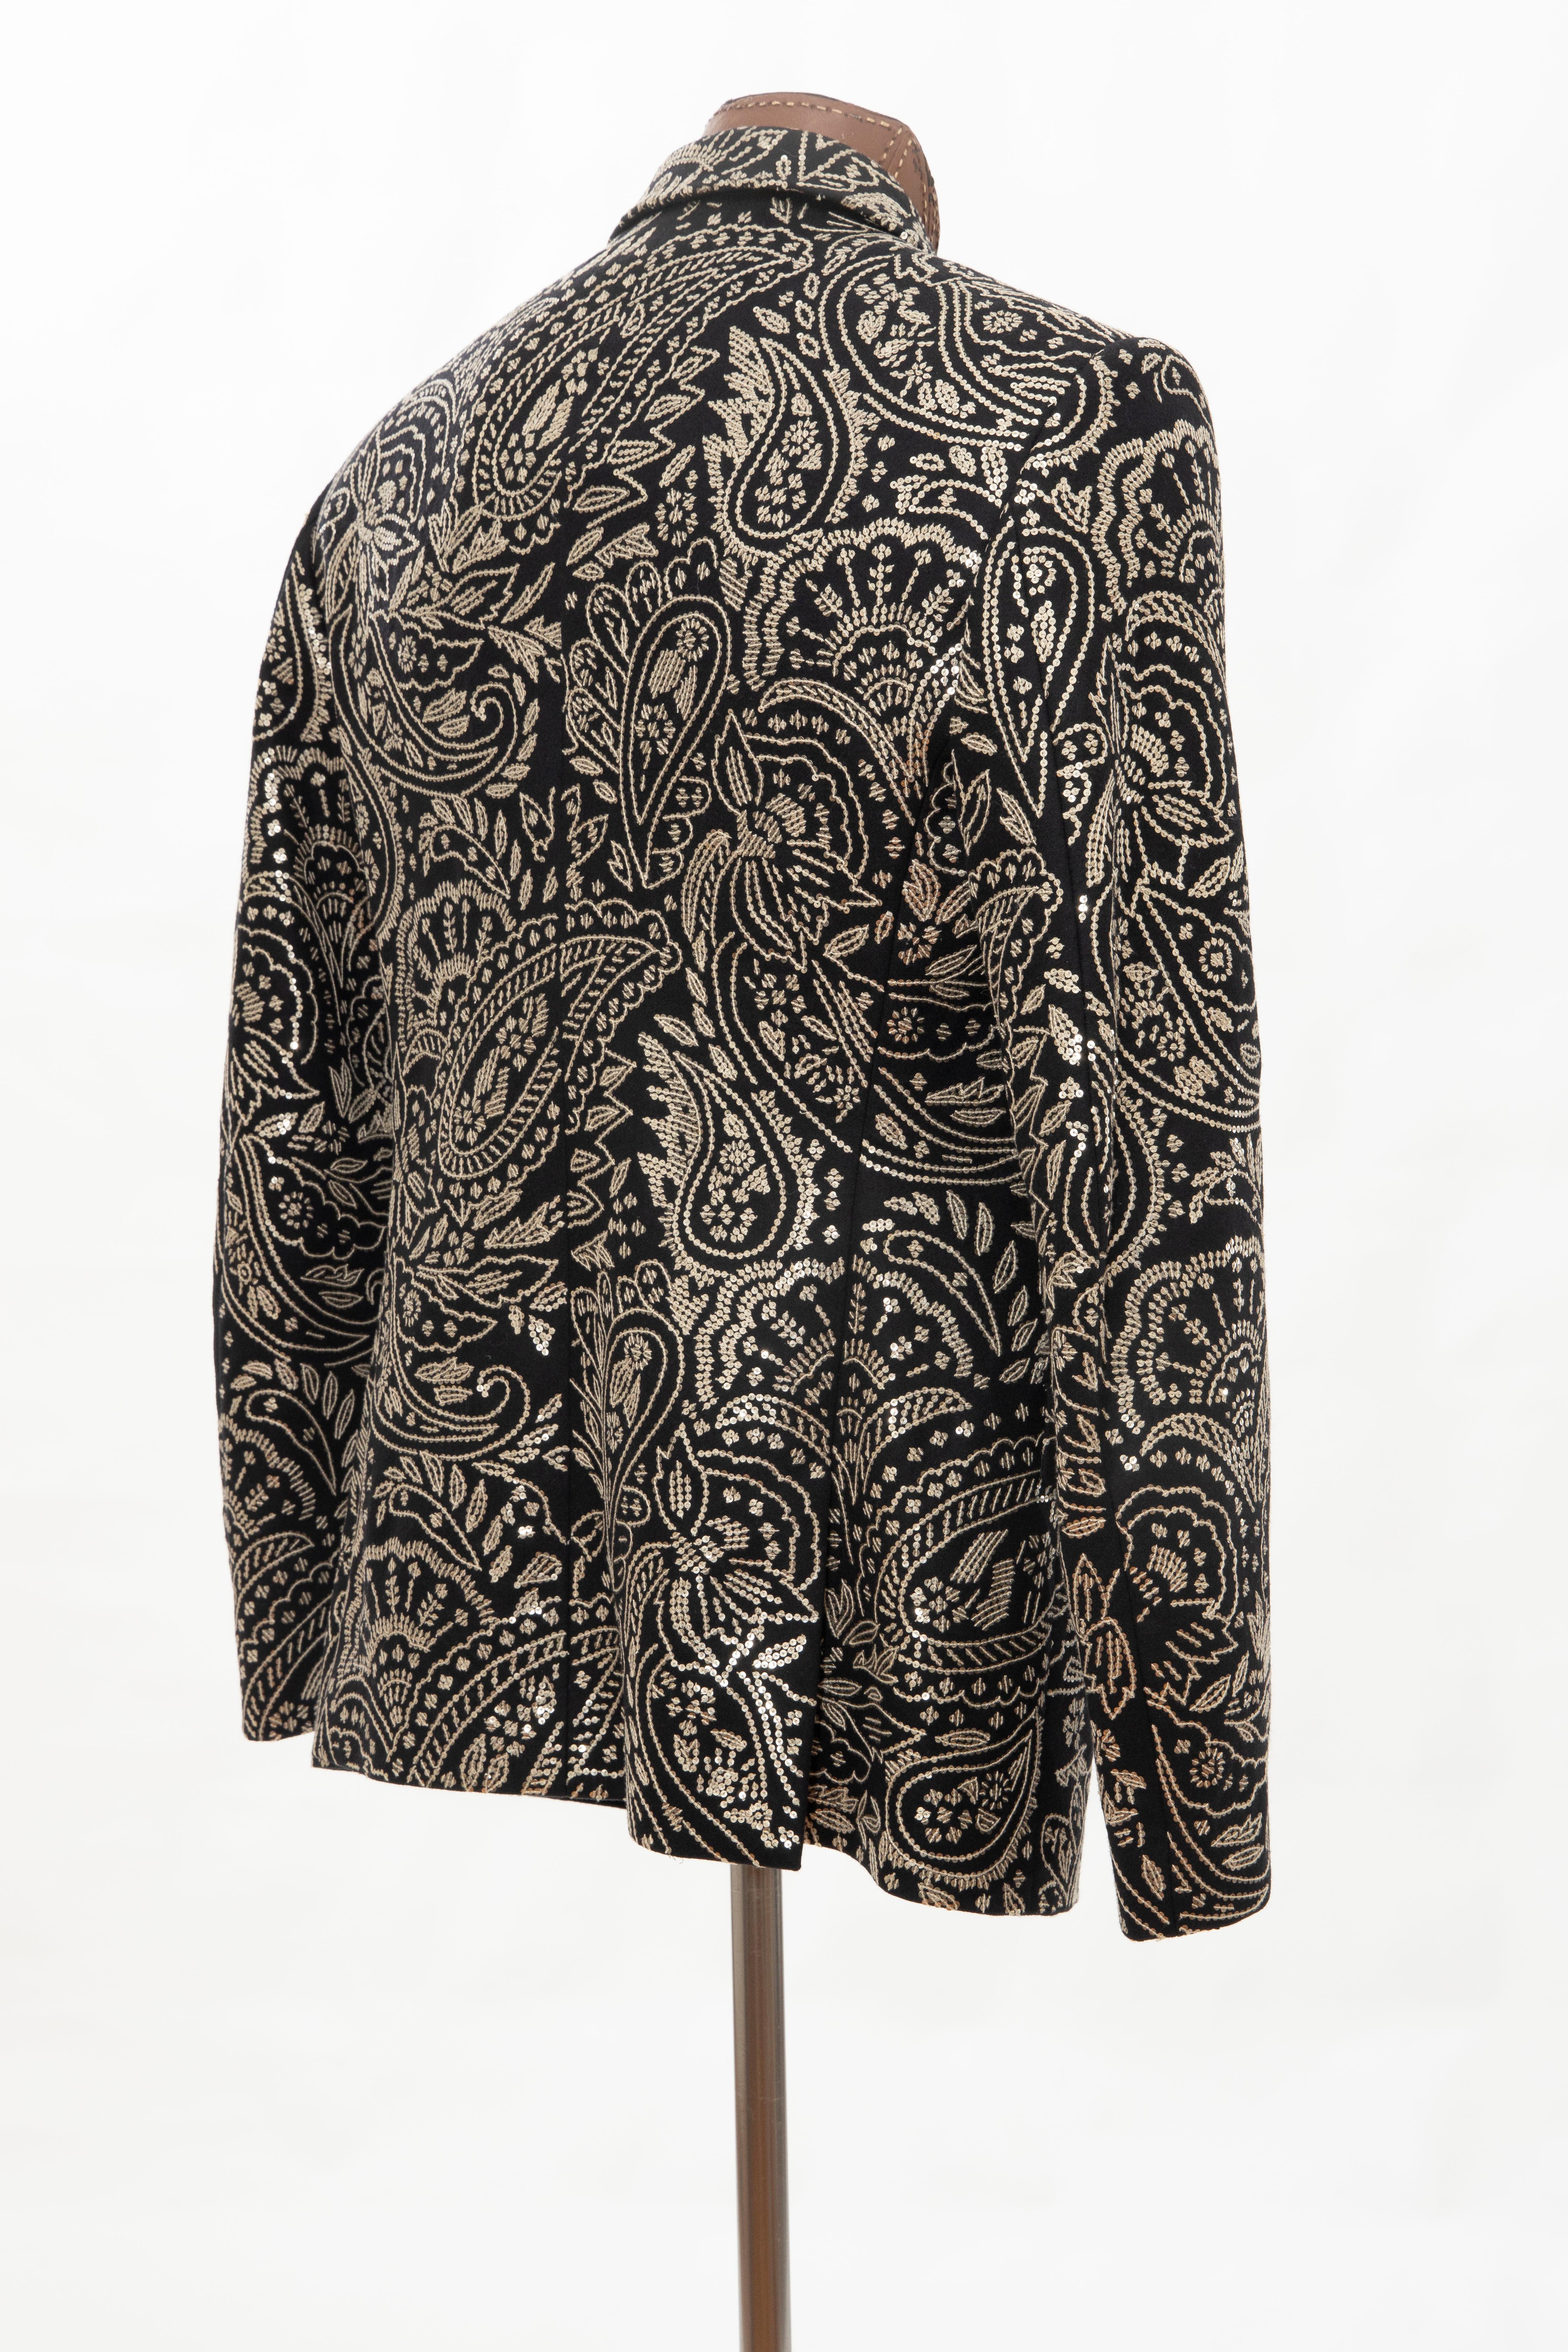 Alexander McQueen Men's Runway Black Wool Embroidered Sequin Blazer, Fall 2016 1